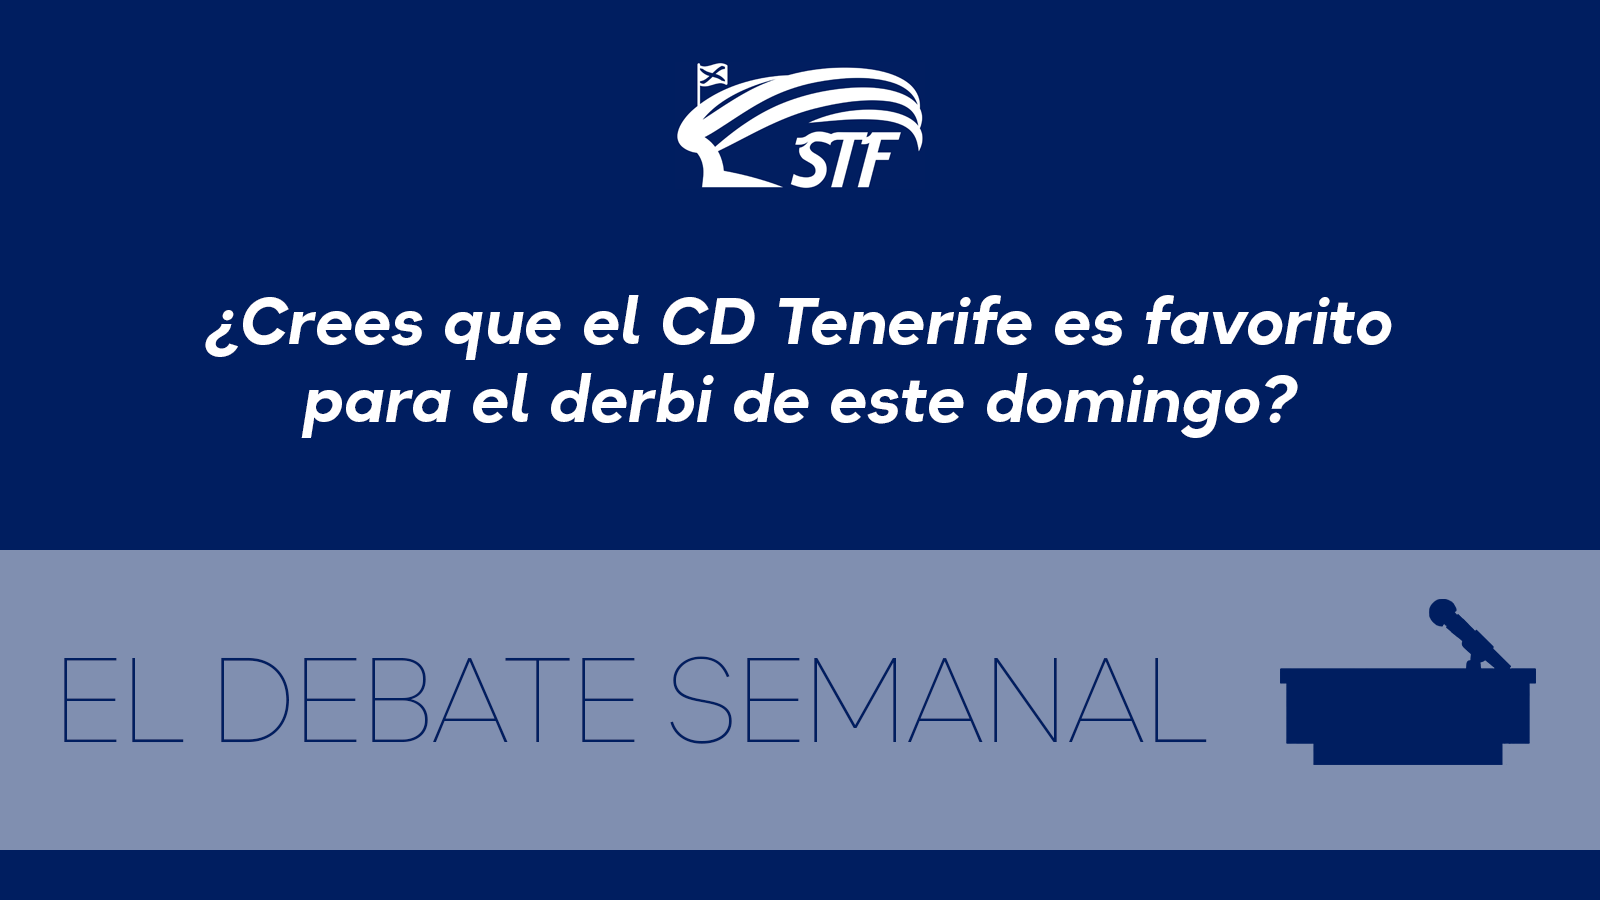 El Debate Semanal: ¿Crees que el CD Tenerife es favorito para el derbi de este domingo? El 63,33% dice no